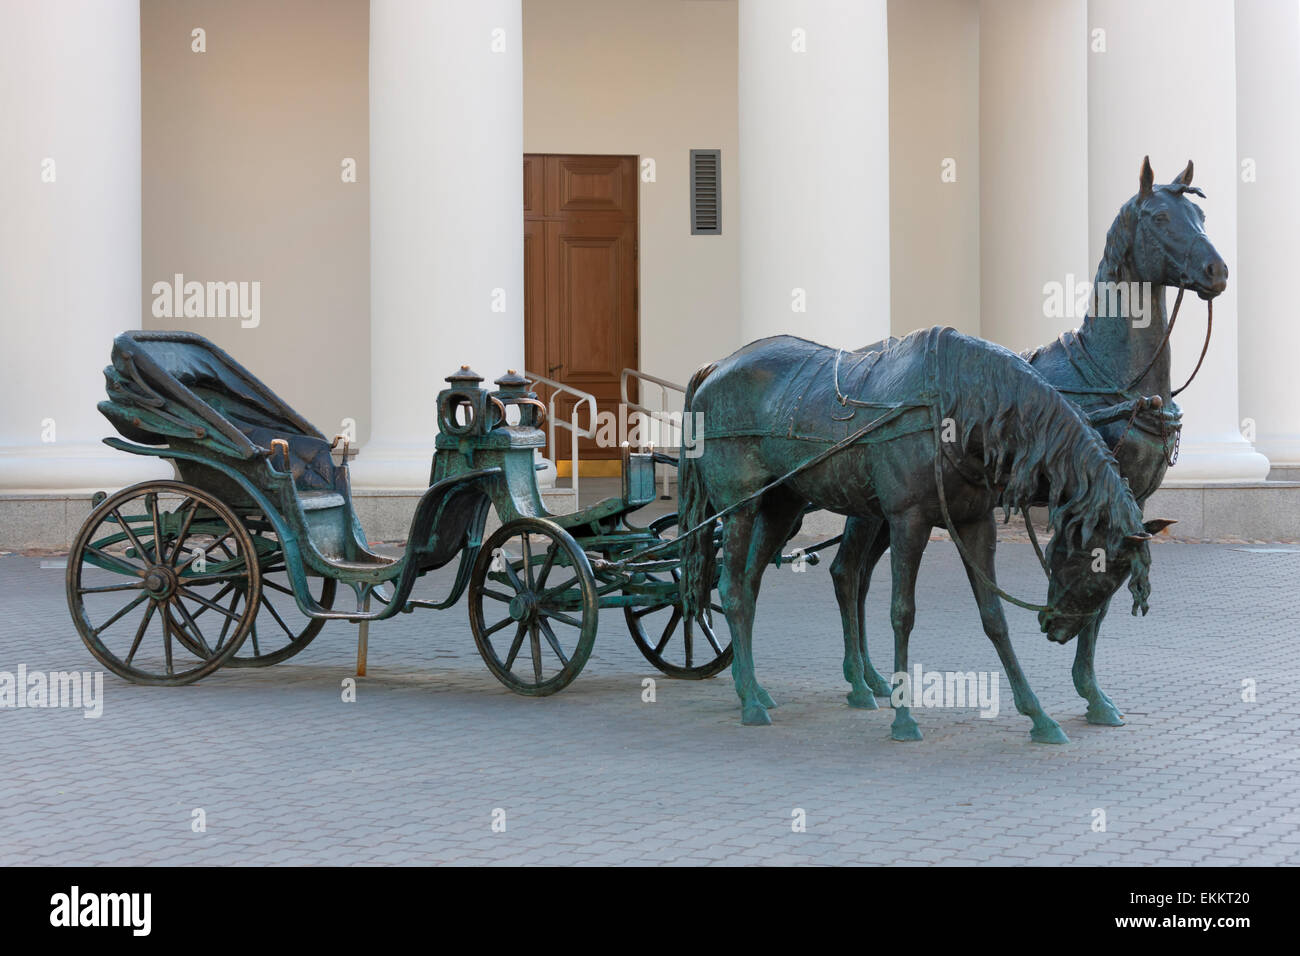 Bronzestatue von Pferdekutsche vor Rathaus, Minsk, Belarus Stockfoto